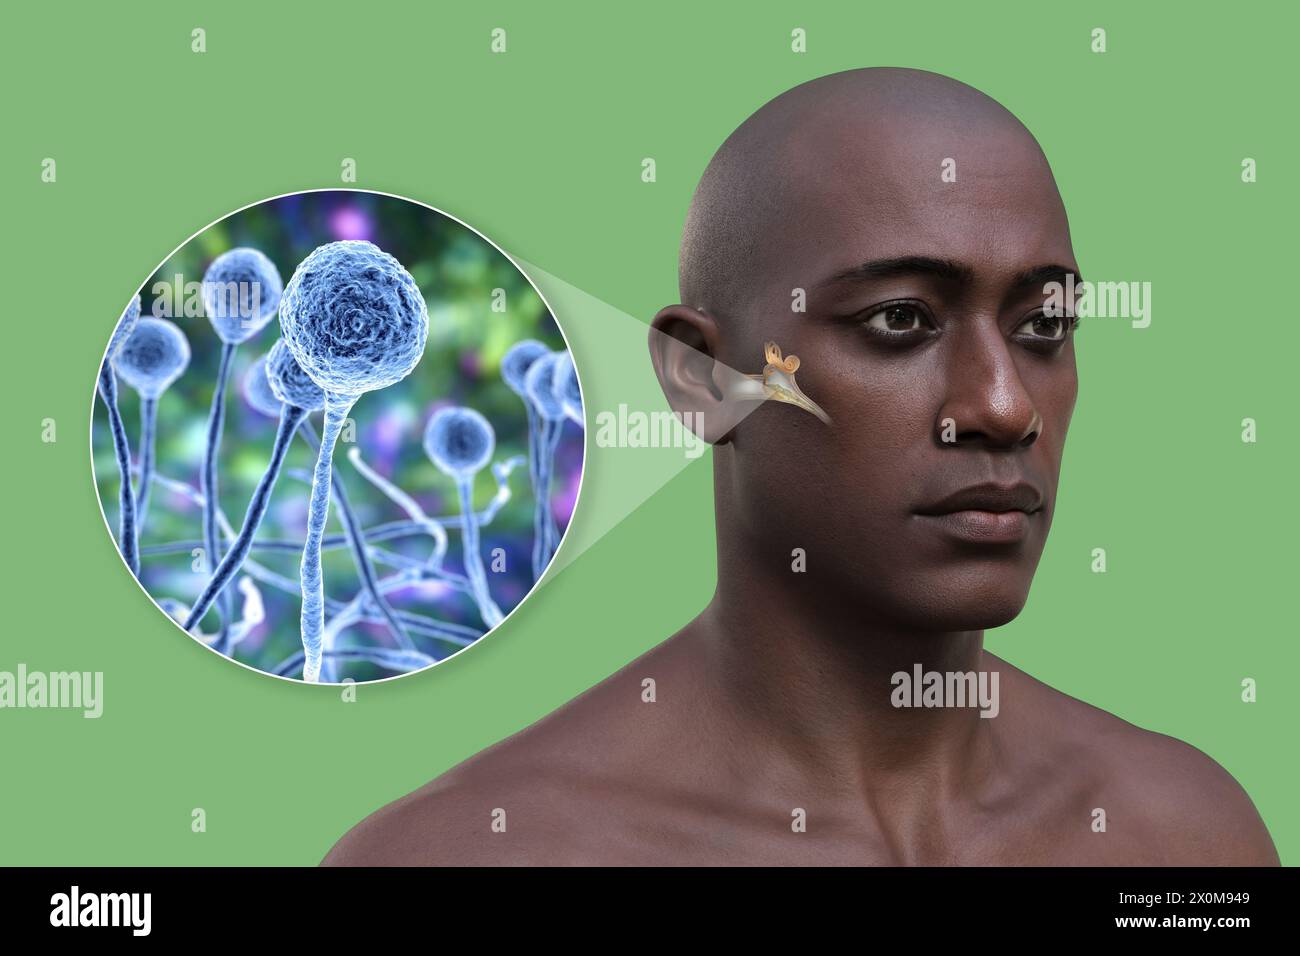 3D-Darstellung eines Mannes mit einer Mittelohrentzündung (Otitis Media) und einer Nahaufnahme von Pilzen, einem der potentiellen Erreger. Zu den Symptomen gehören Entzündungen, Flüssigkeitsansammlungen und Schmerzen im Ohr. Stockfoto